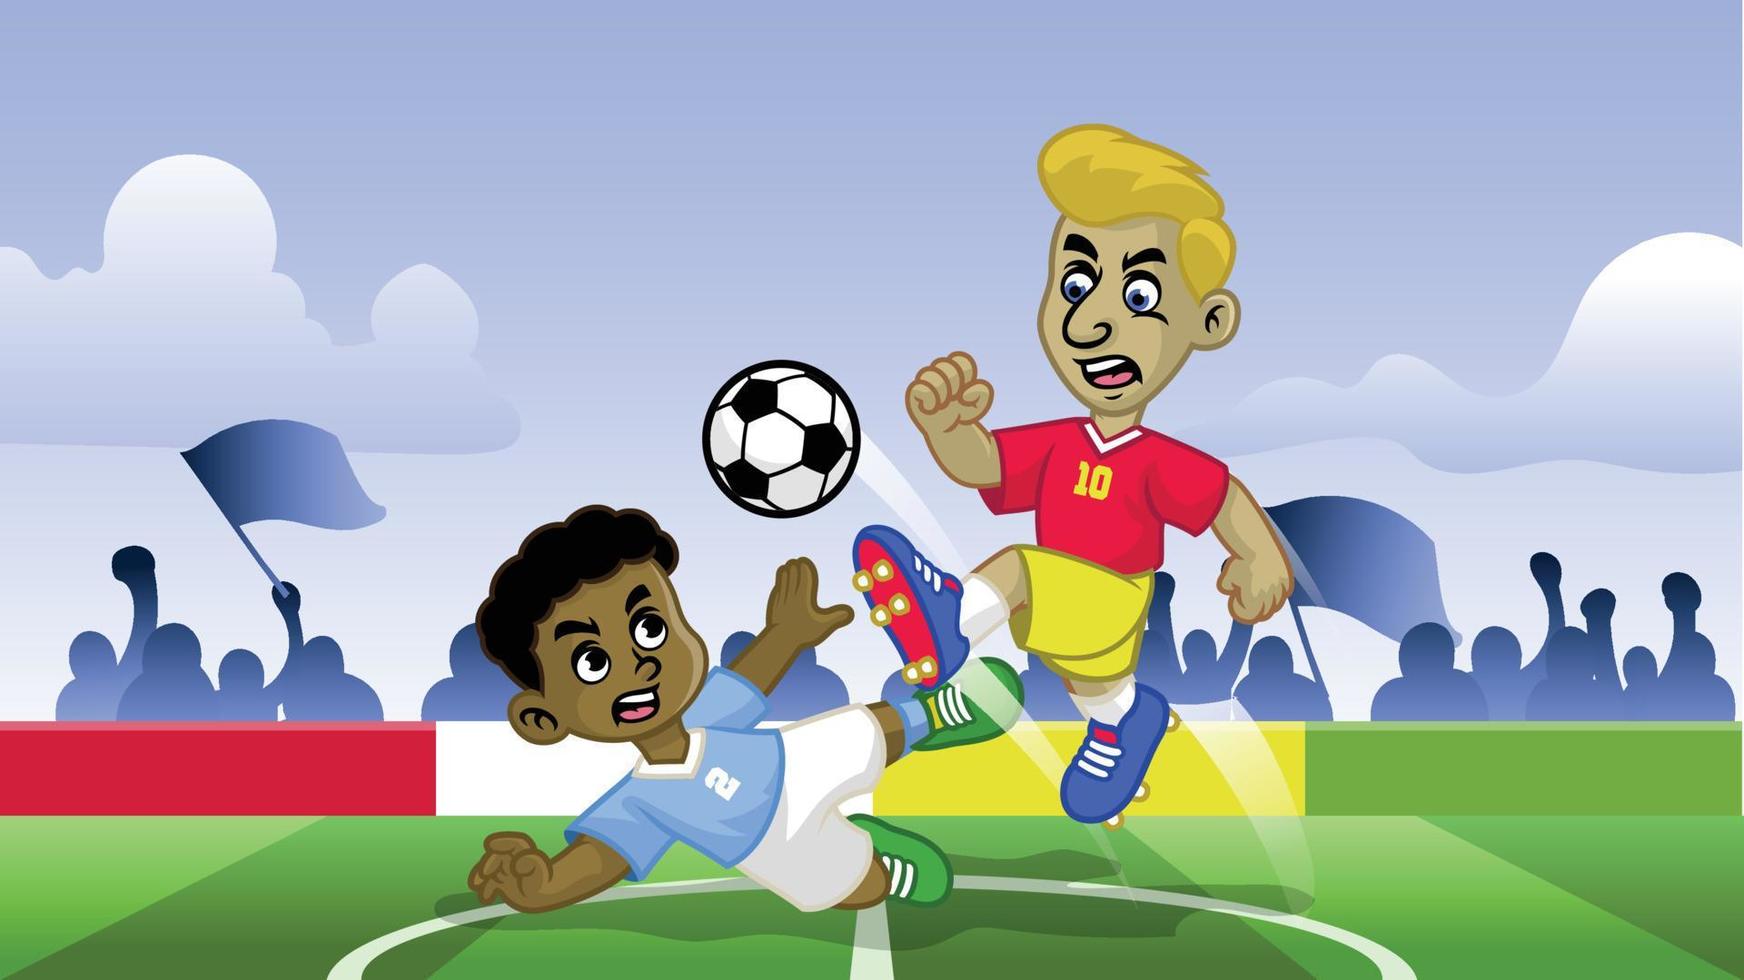 dibujos animados fútbol niños jugando fútbol juego en el campo vector